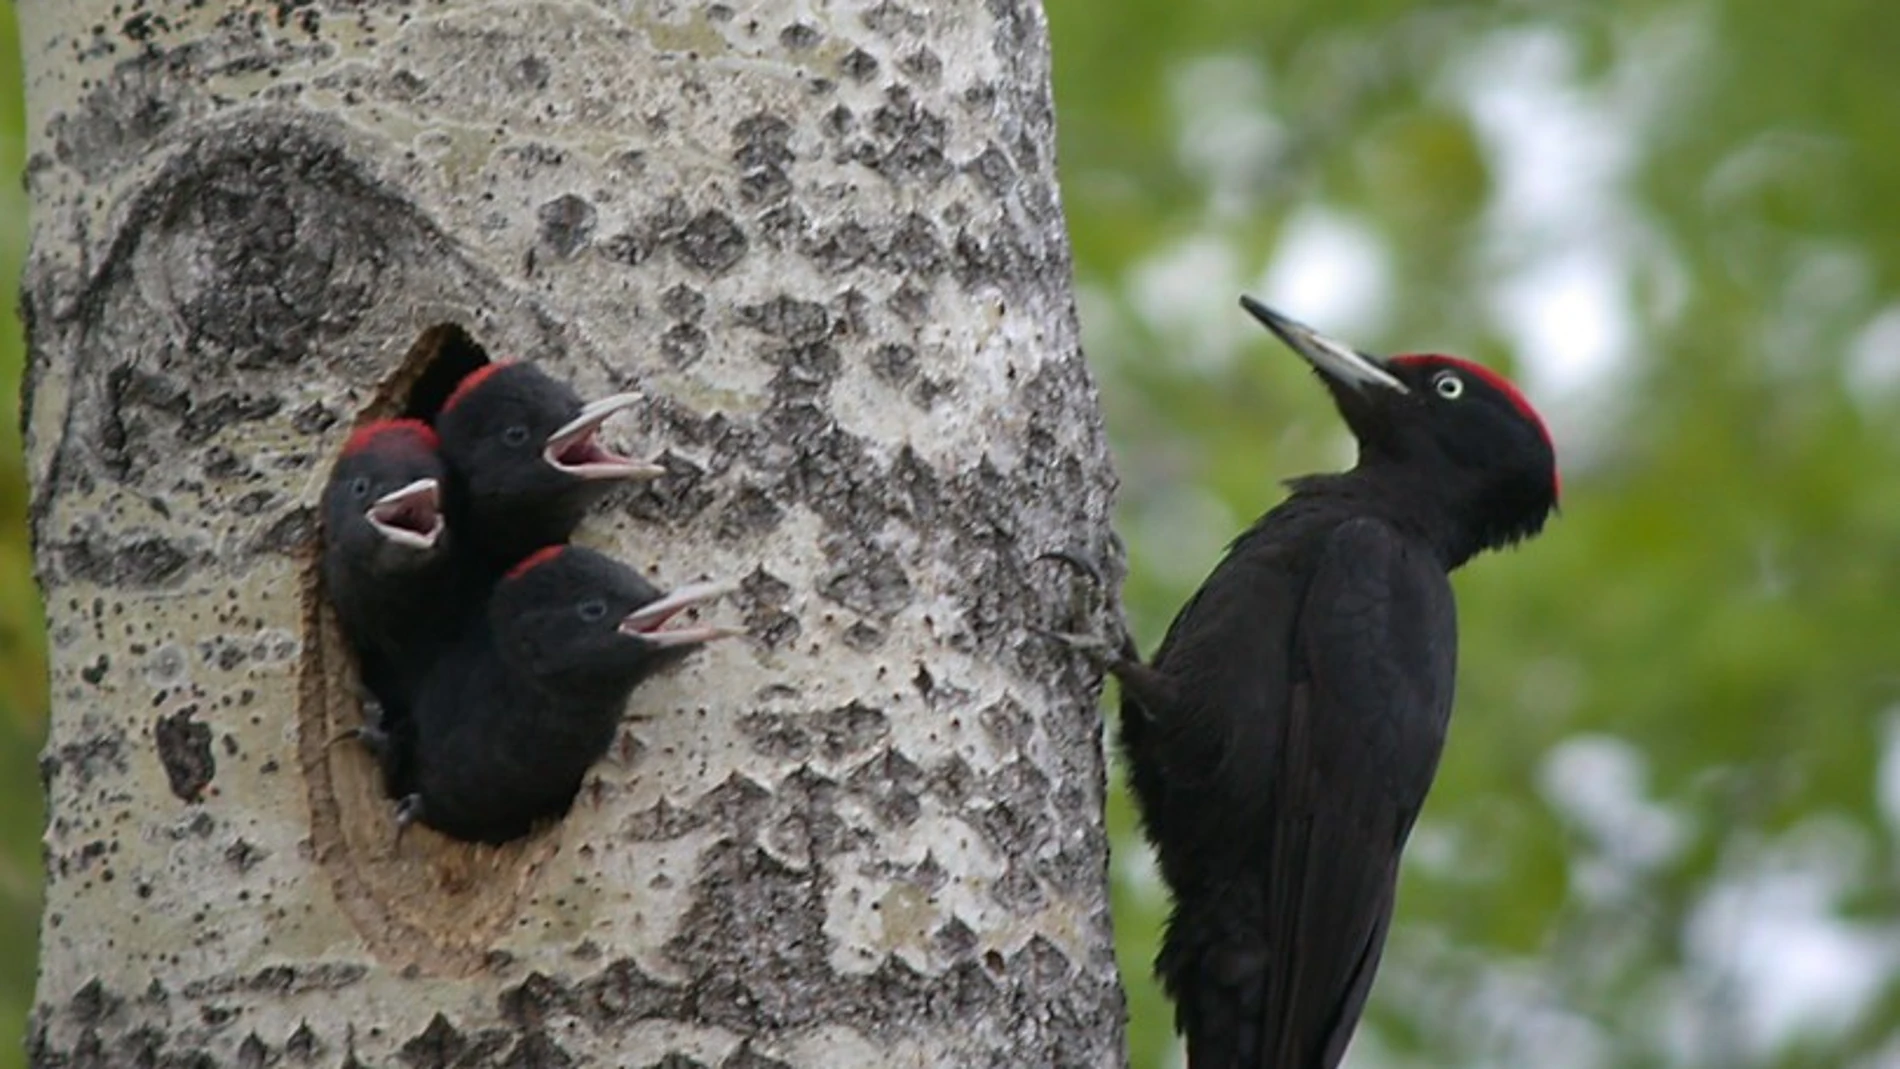 Un pájaro carpintero posado sobre el tronco de un árbol, con tres crías que asoman del nido